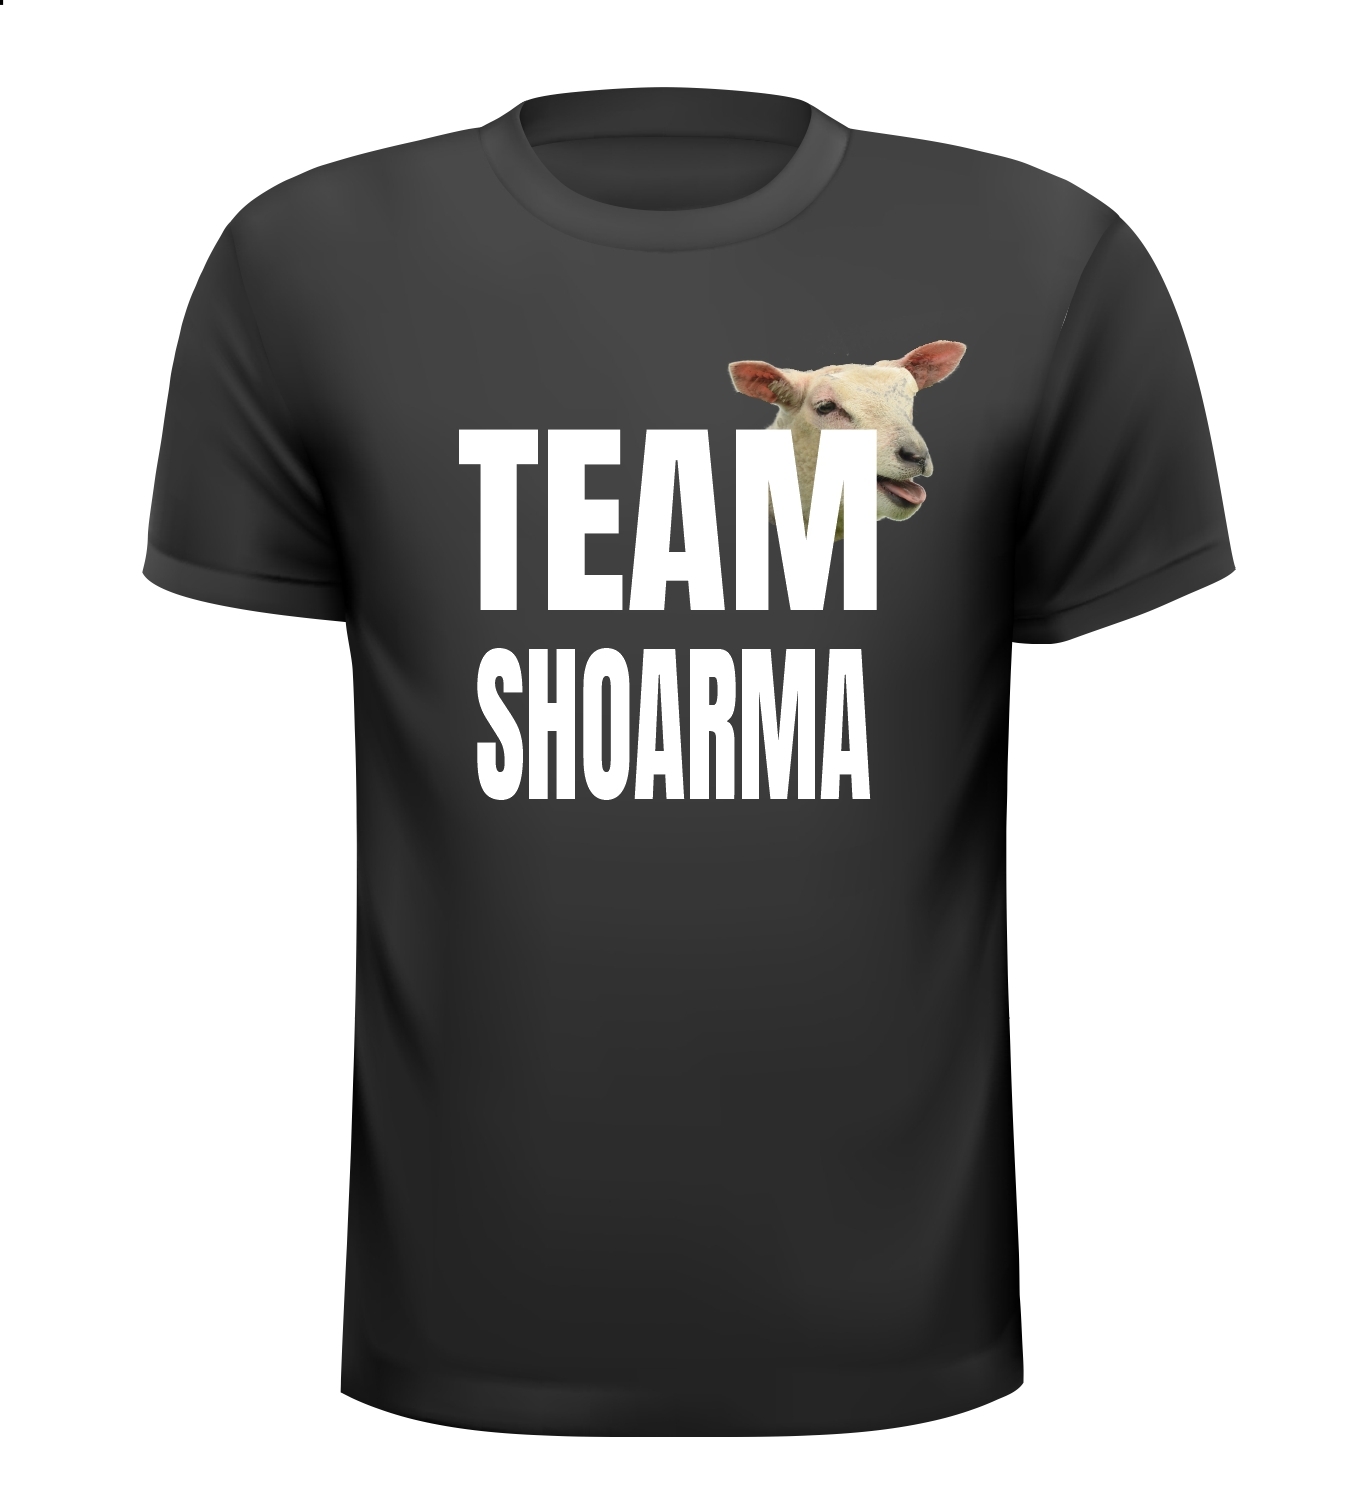 T-shirt voor Team Shoarma. Het Shoarma Team